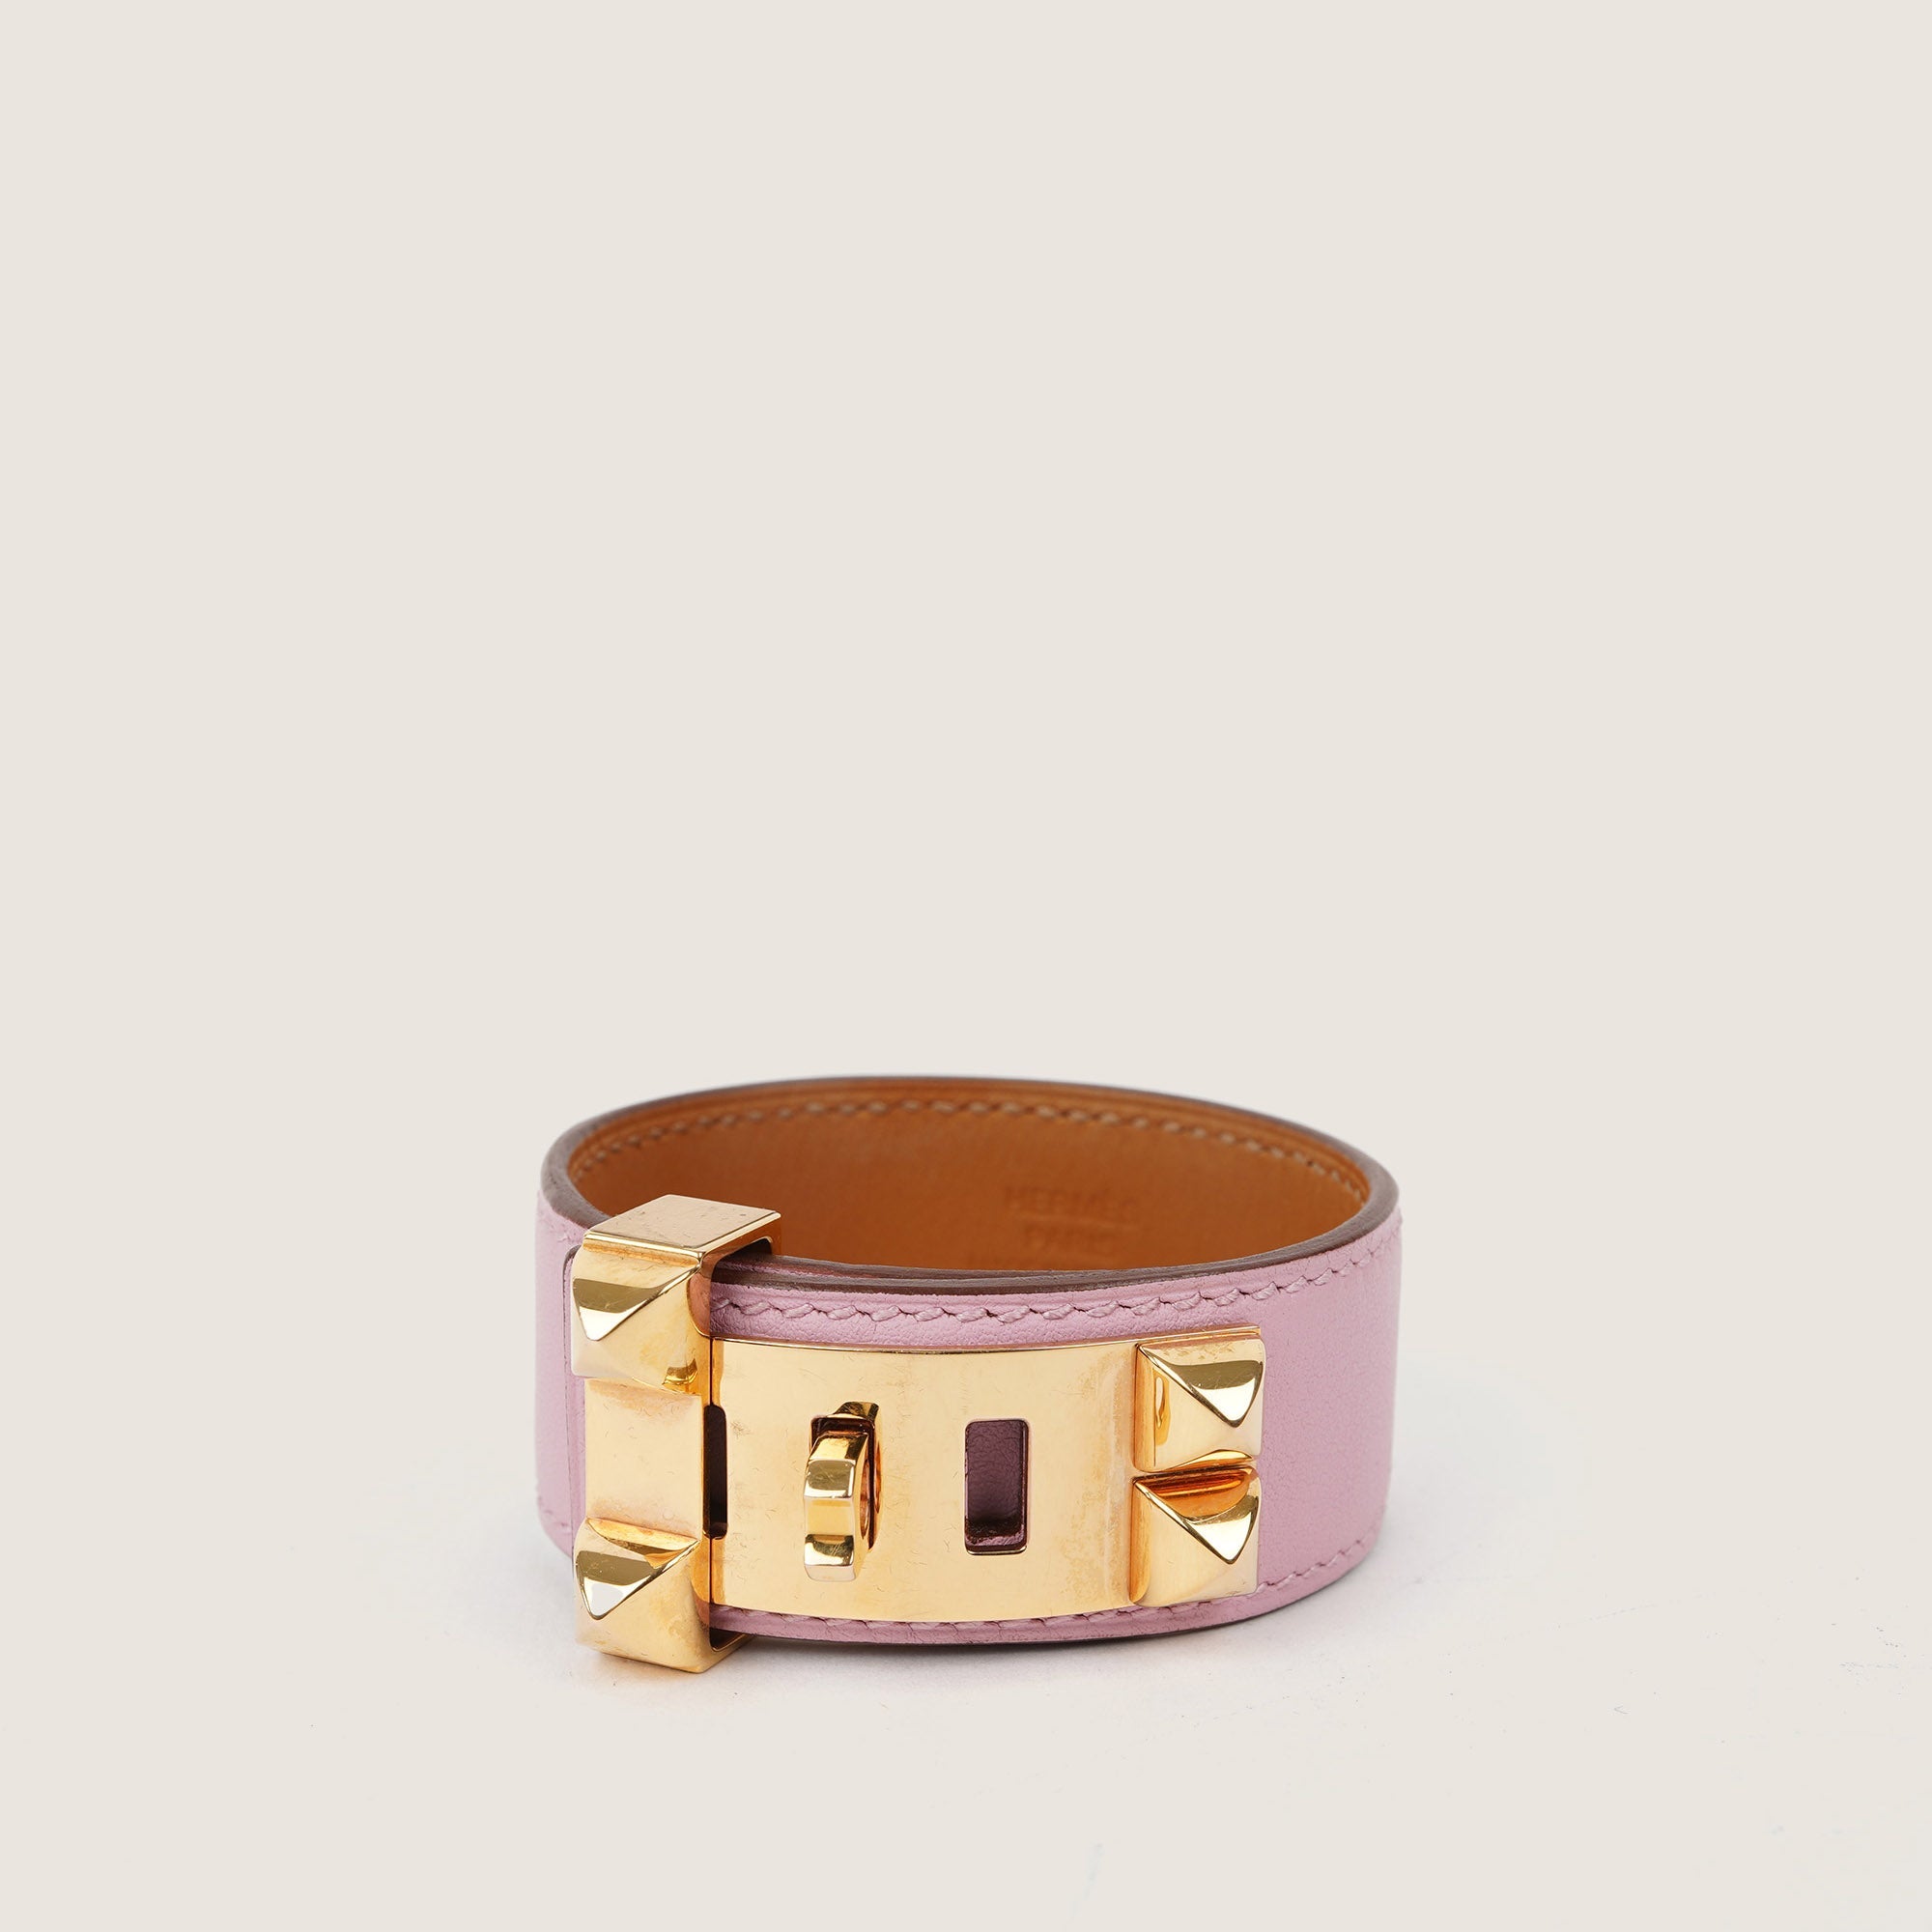 Collier De Chien 24 Bracelet - HERMÈS - Affordable Luxury image